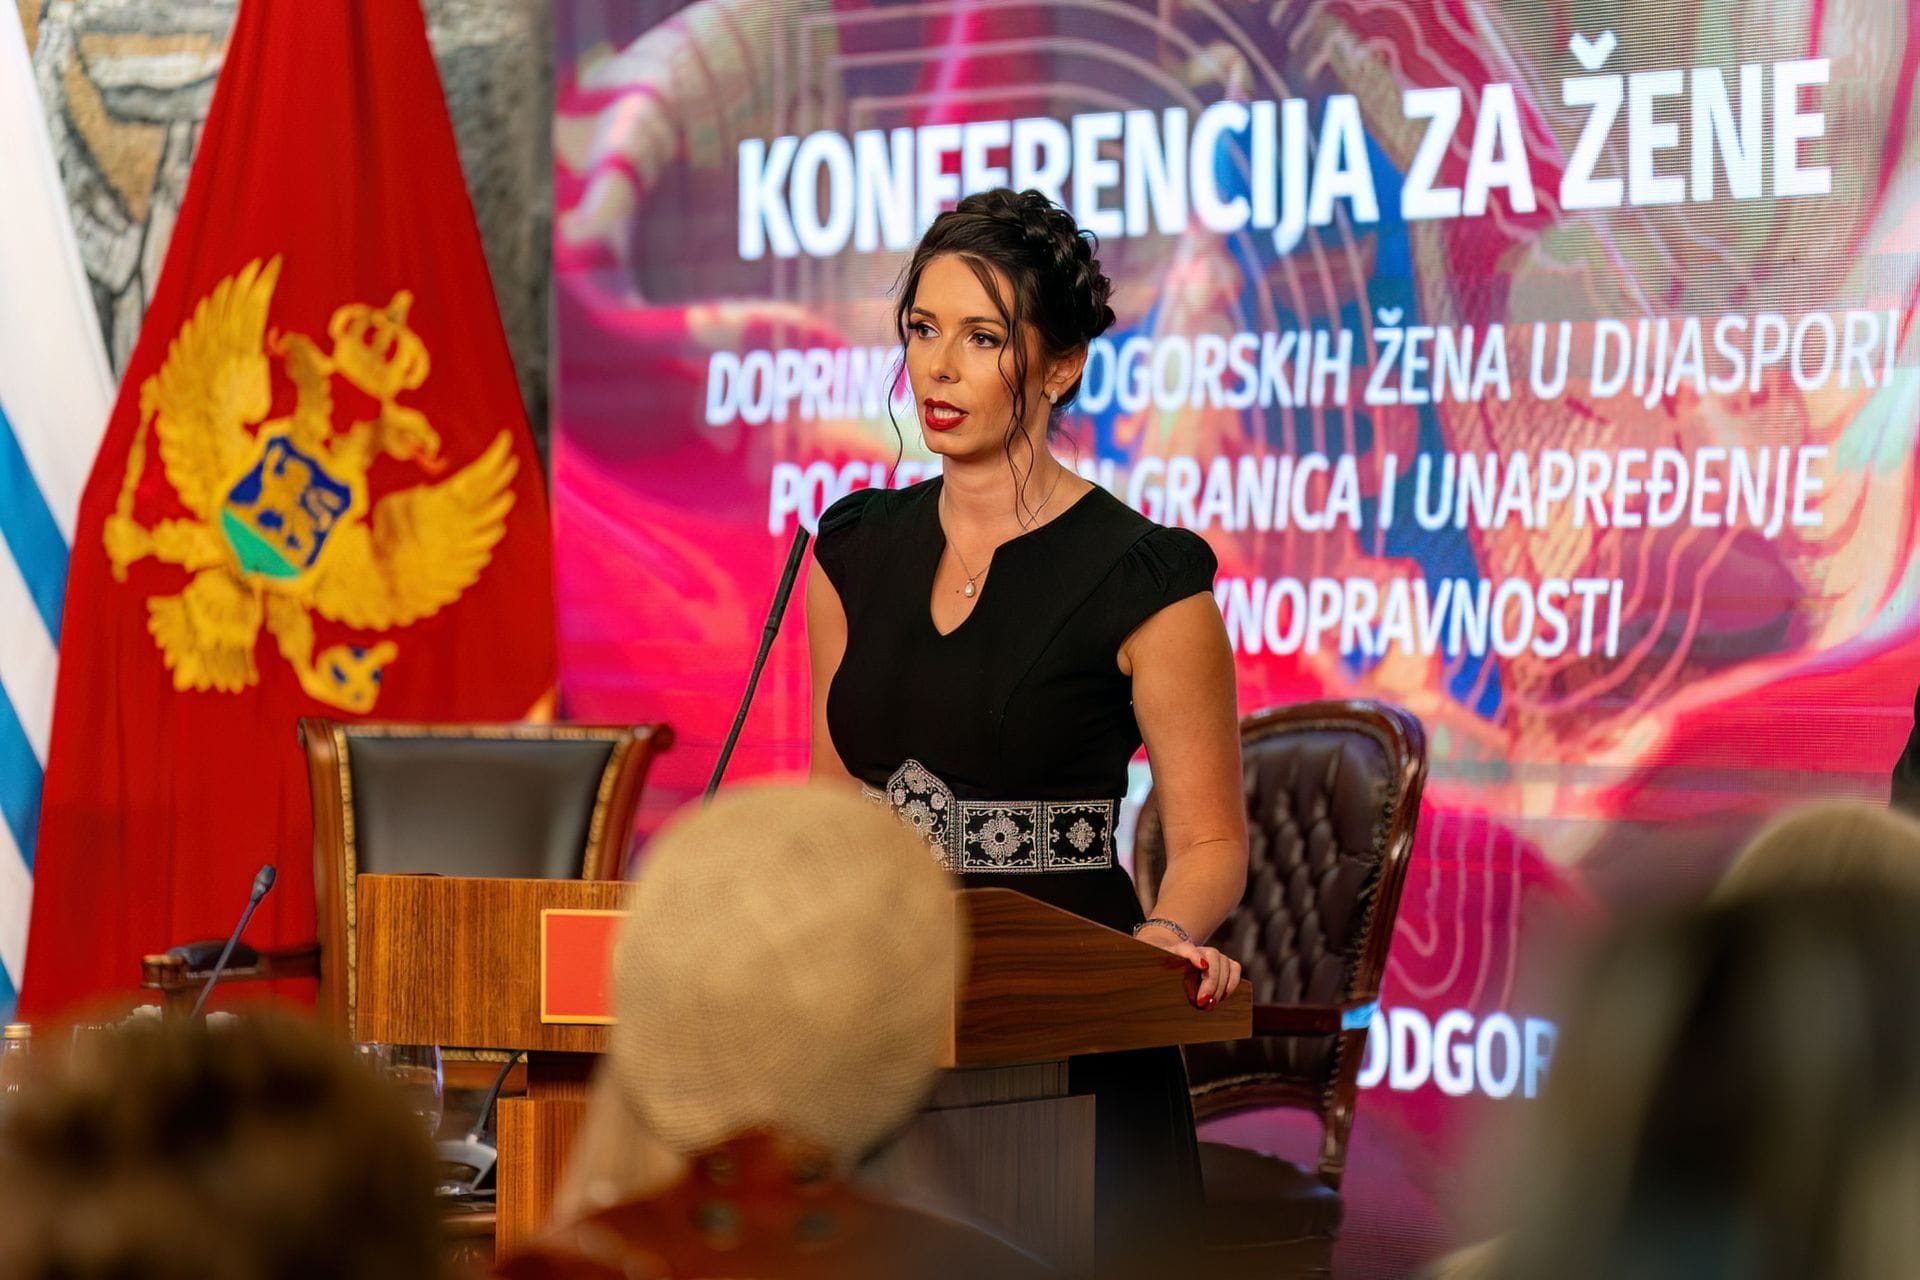 Doprinosi crnogorskih žena u dijaspori